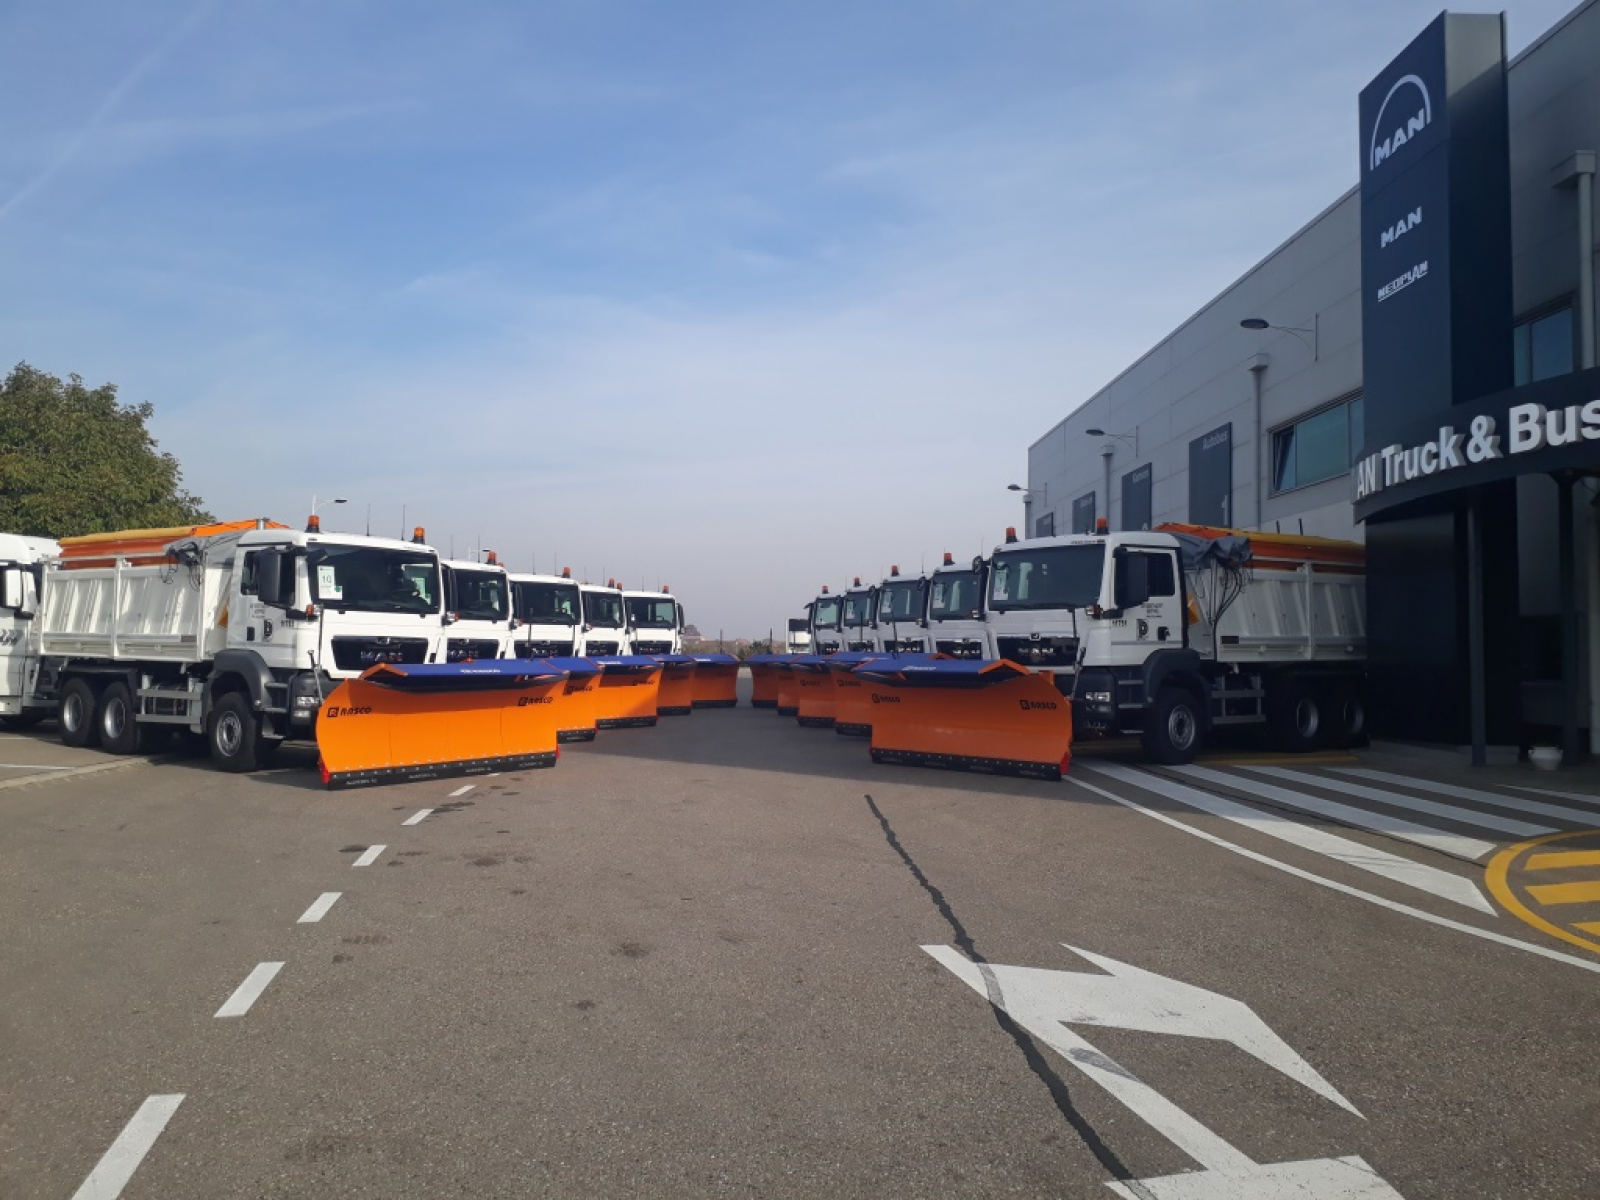 MAN Truck & Bus Importeur für Serbien und Montenegro übergibt 32 neue MAN an staatliche Unternehmen